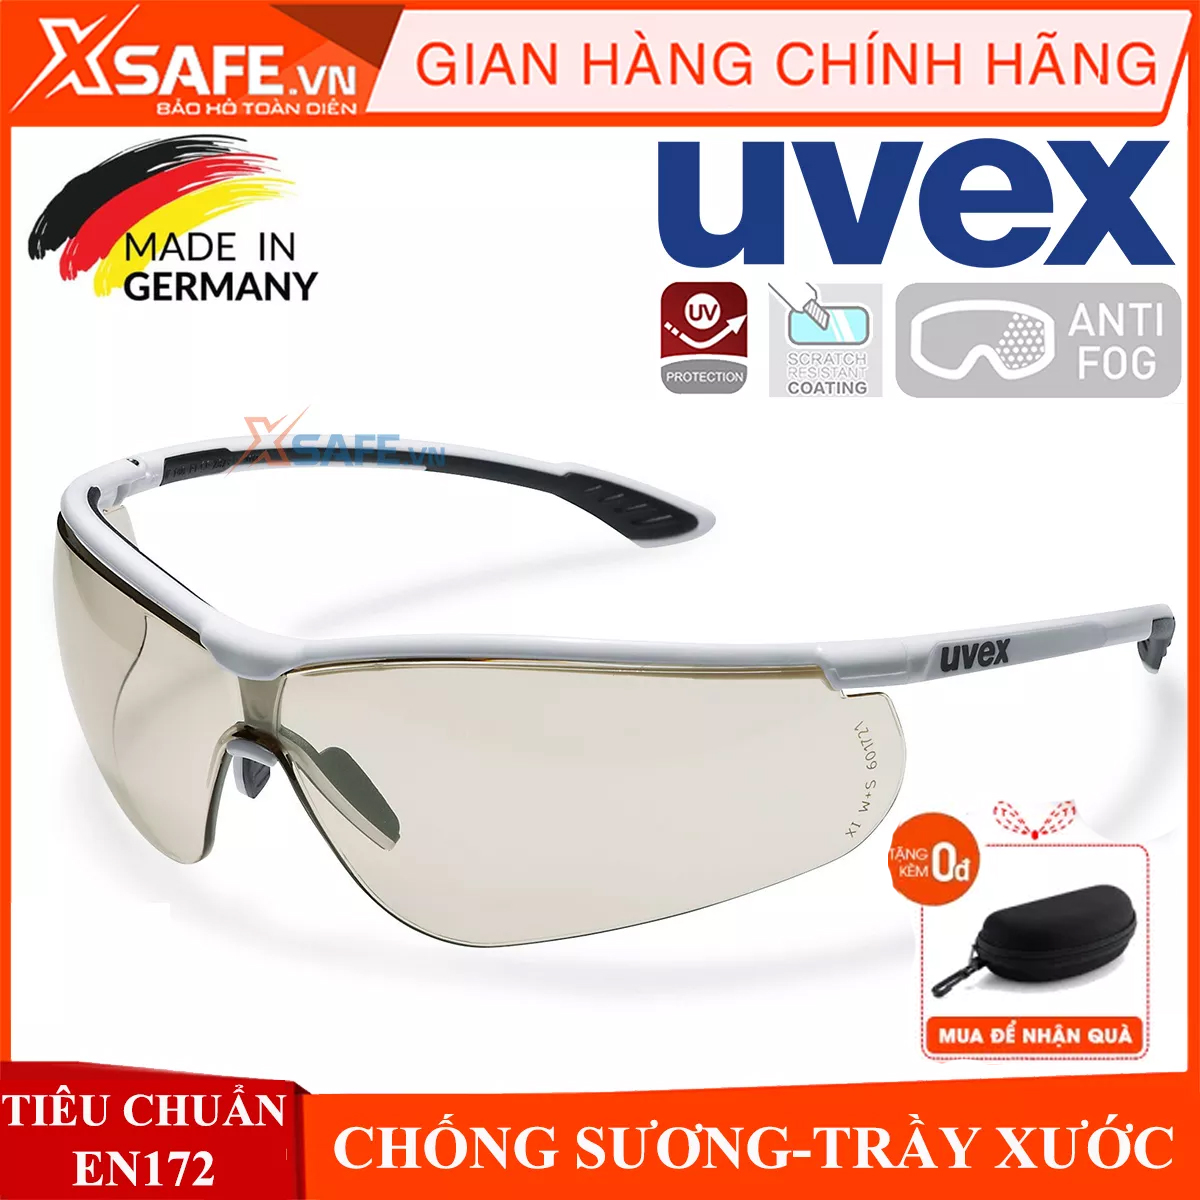 Kính bảo hộ UVEX CBR65 9193064 màu trà - kính chống chói, không bám nước